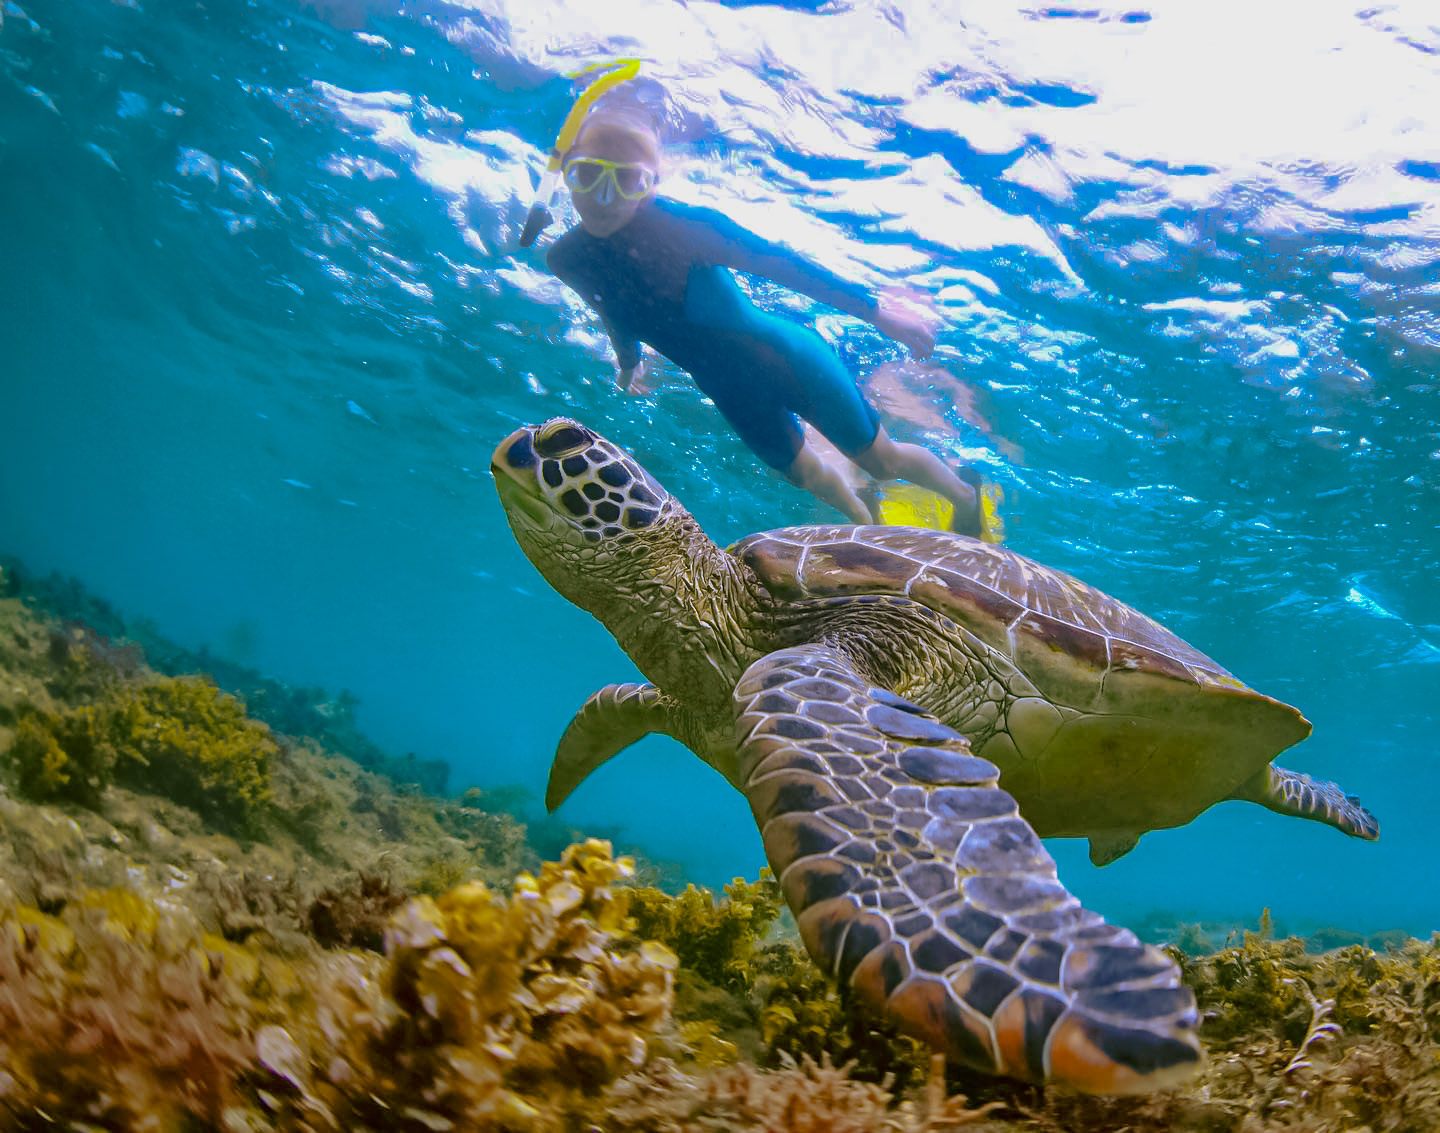 oahu hawaii snorkeling tours